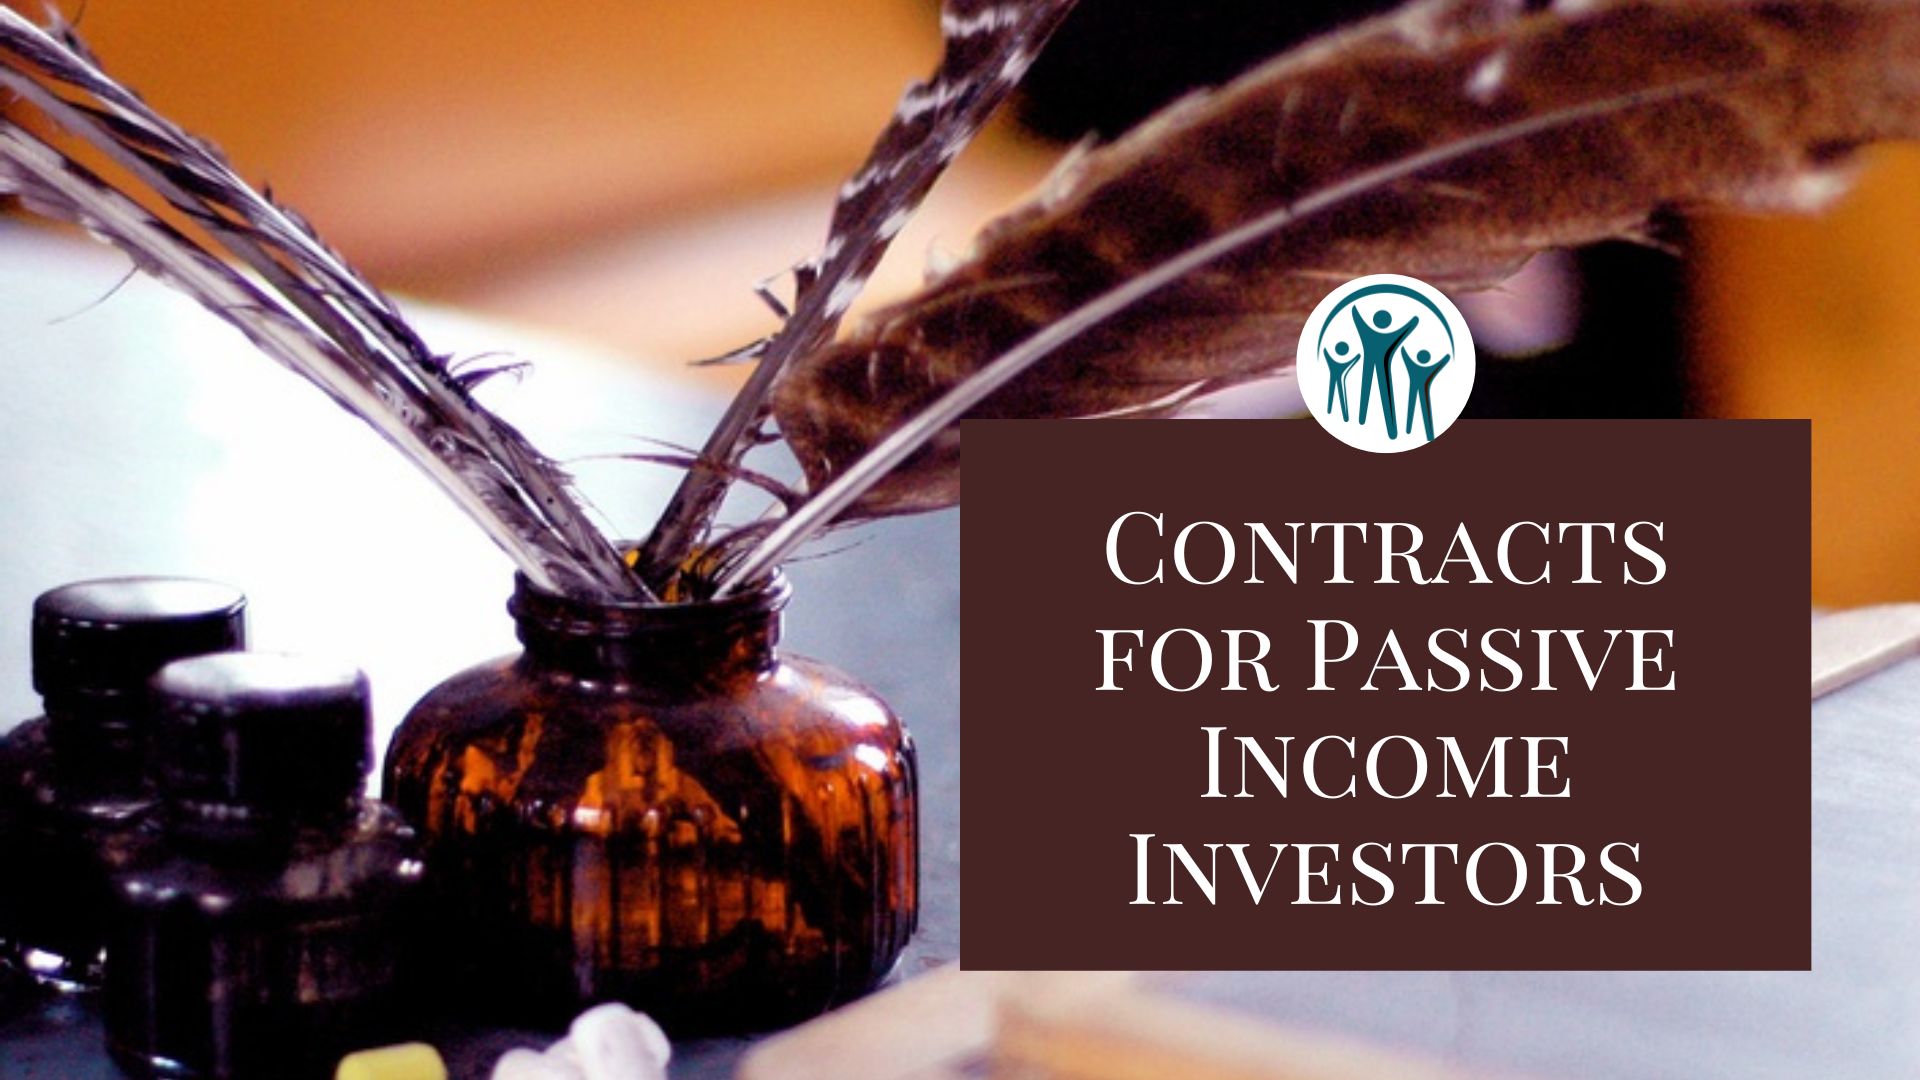 Contracts for Passive Income Investors